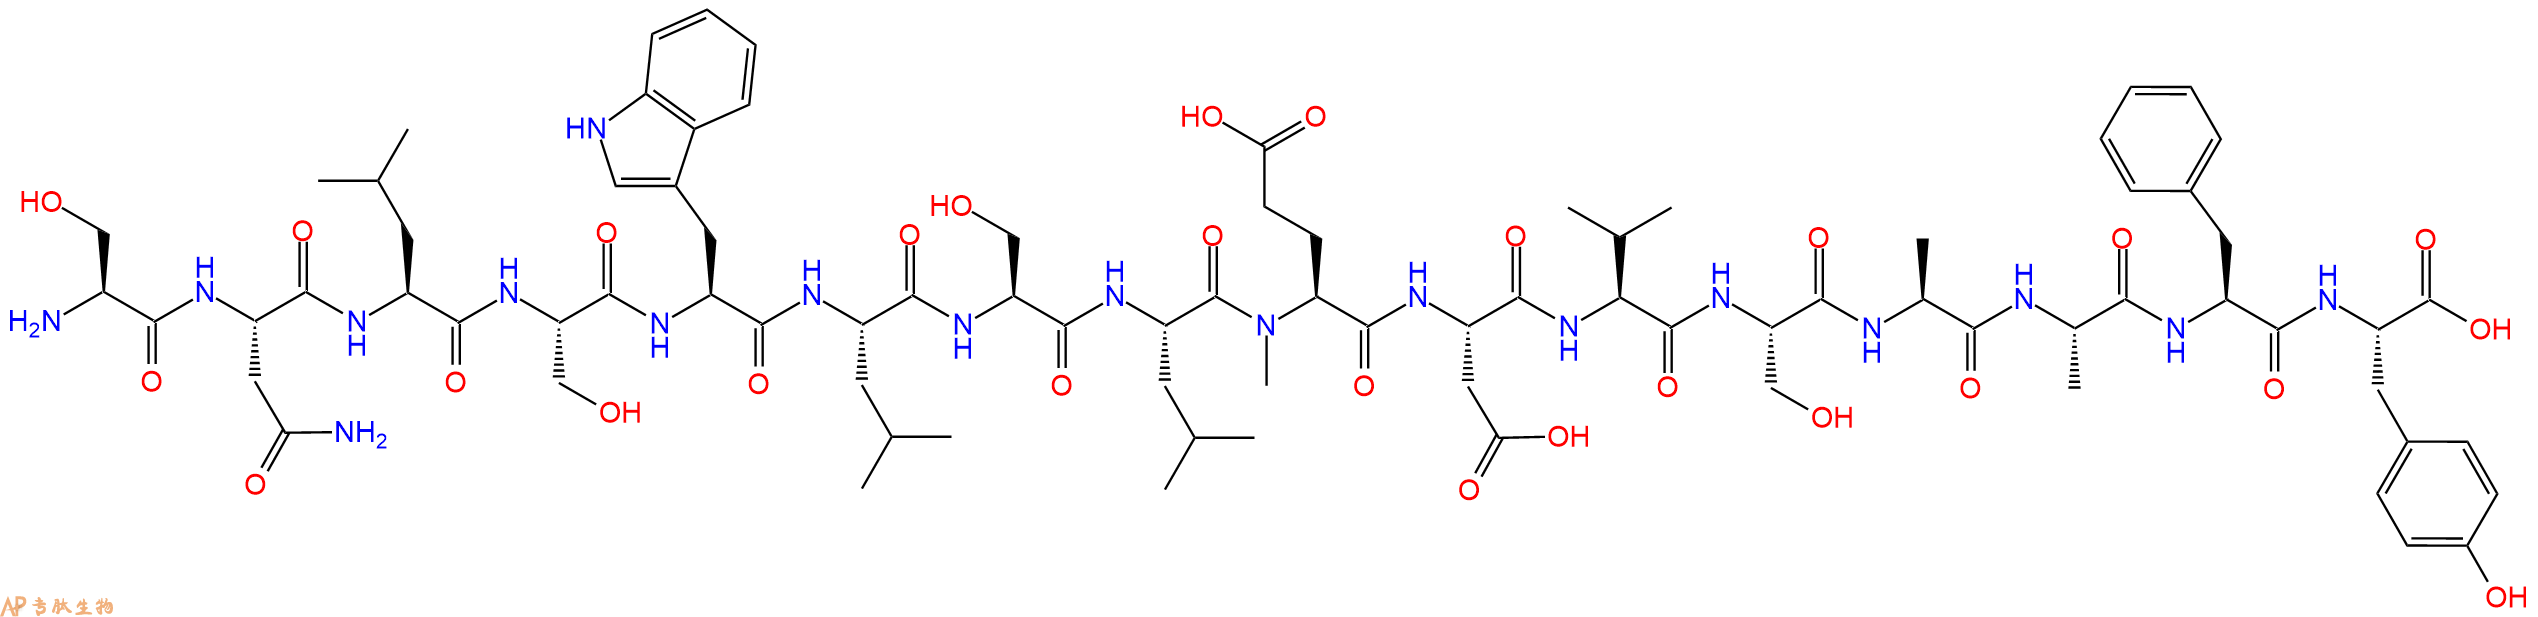 专肽生物产品H2N-Ser-Asn-Leu-Ser-Trp-Leu-Ser-Leu-(NMe)Glu-Asp-V